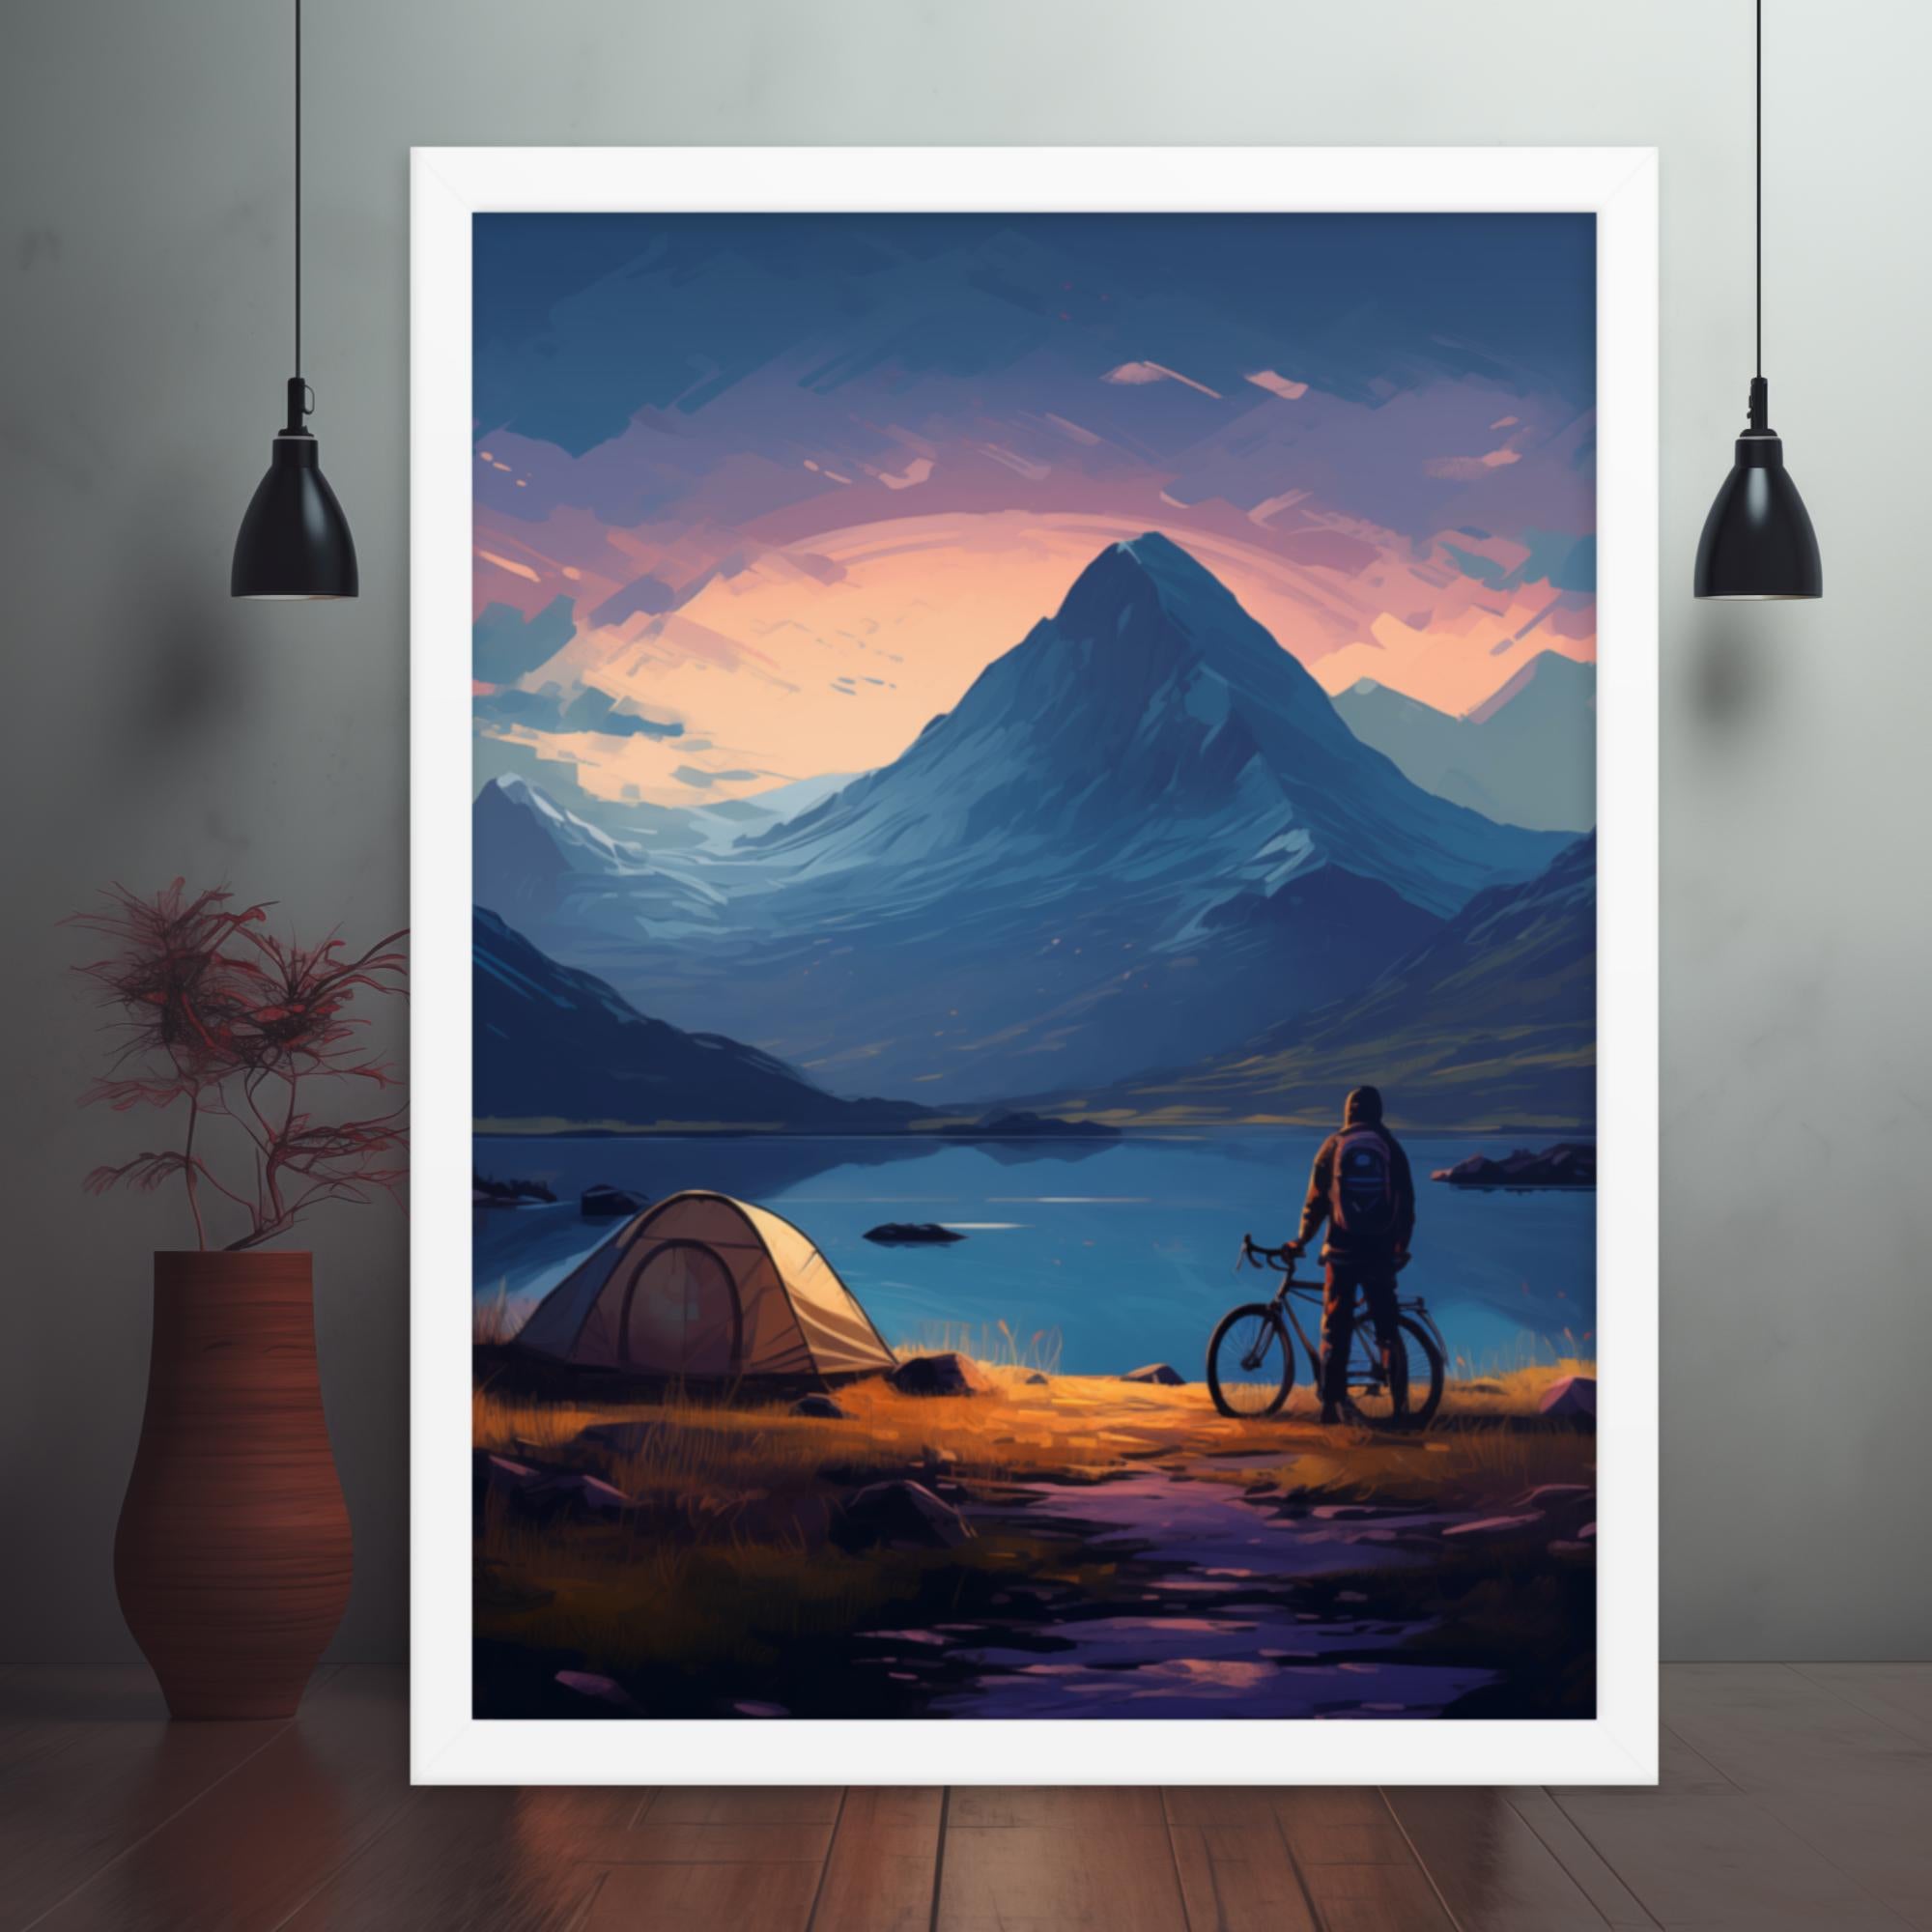 Highland Camp - Under the Scottish Skies Framed poster